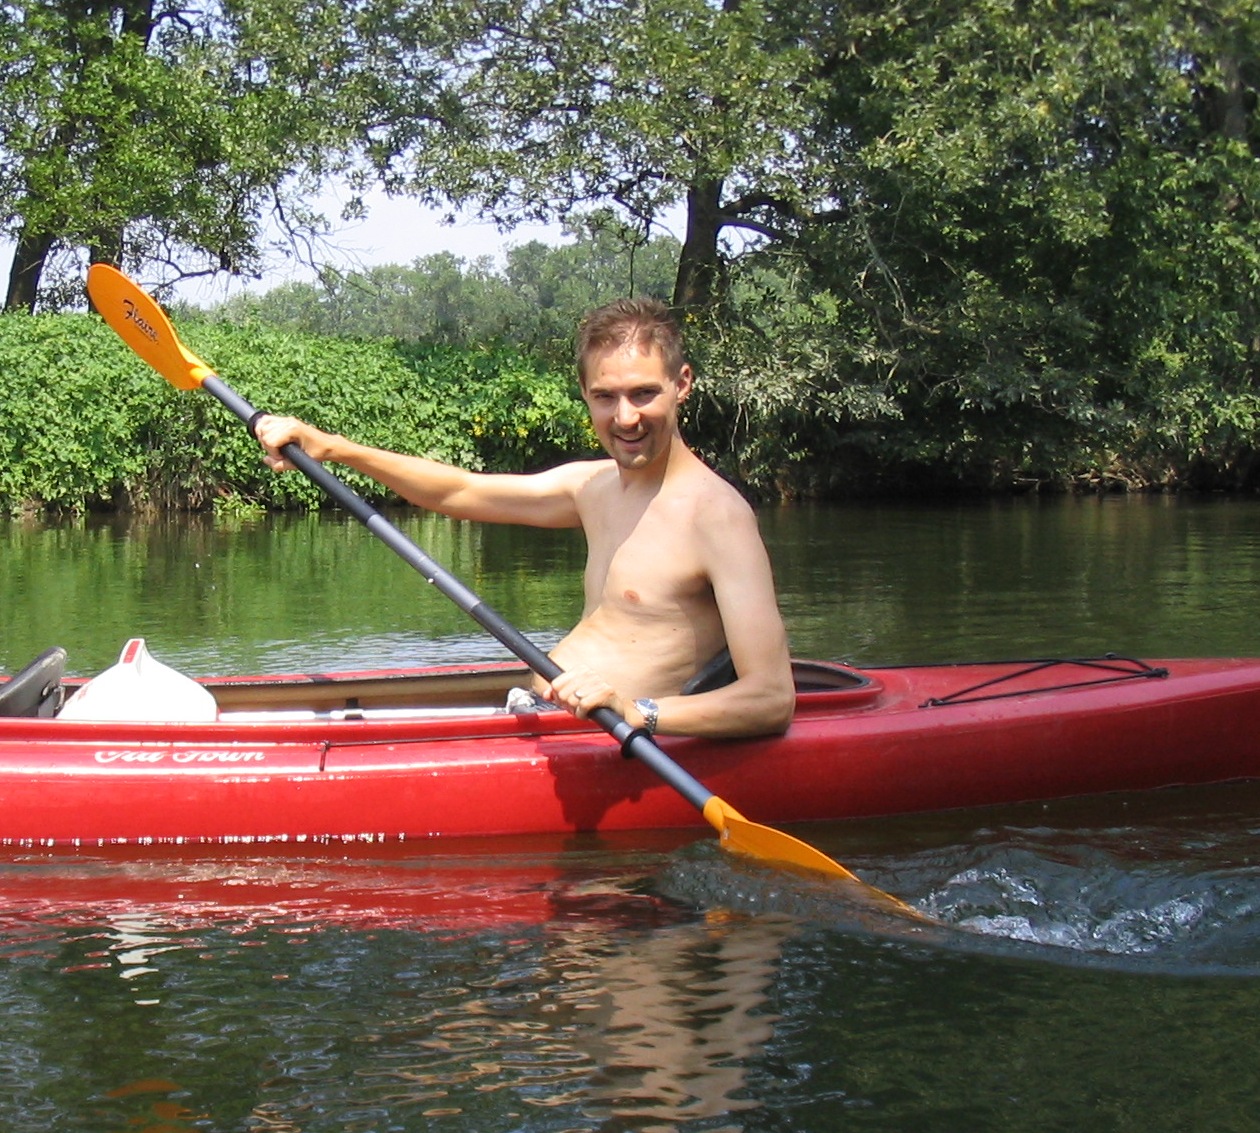 [Dave_kayaking.jpg]